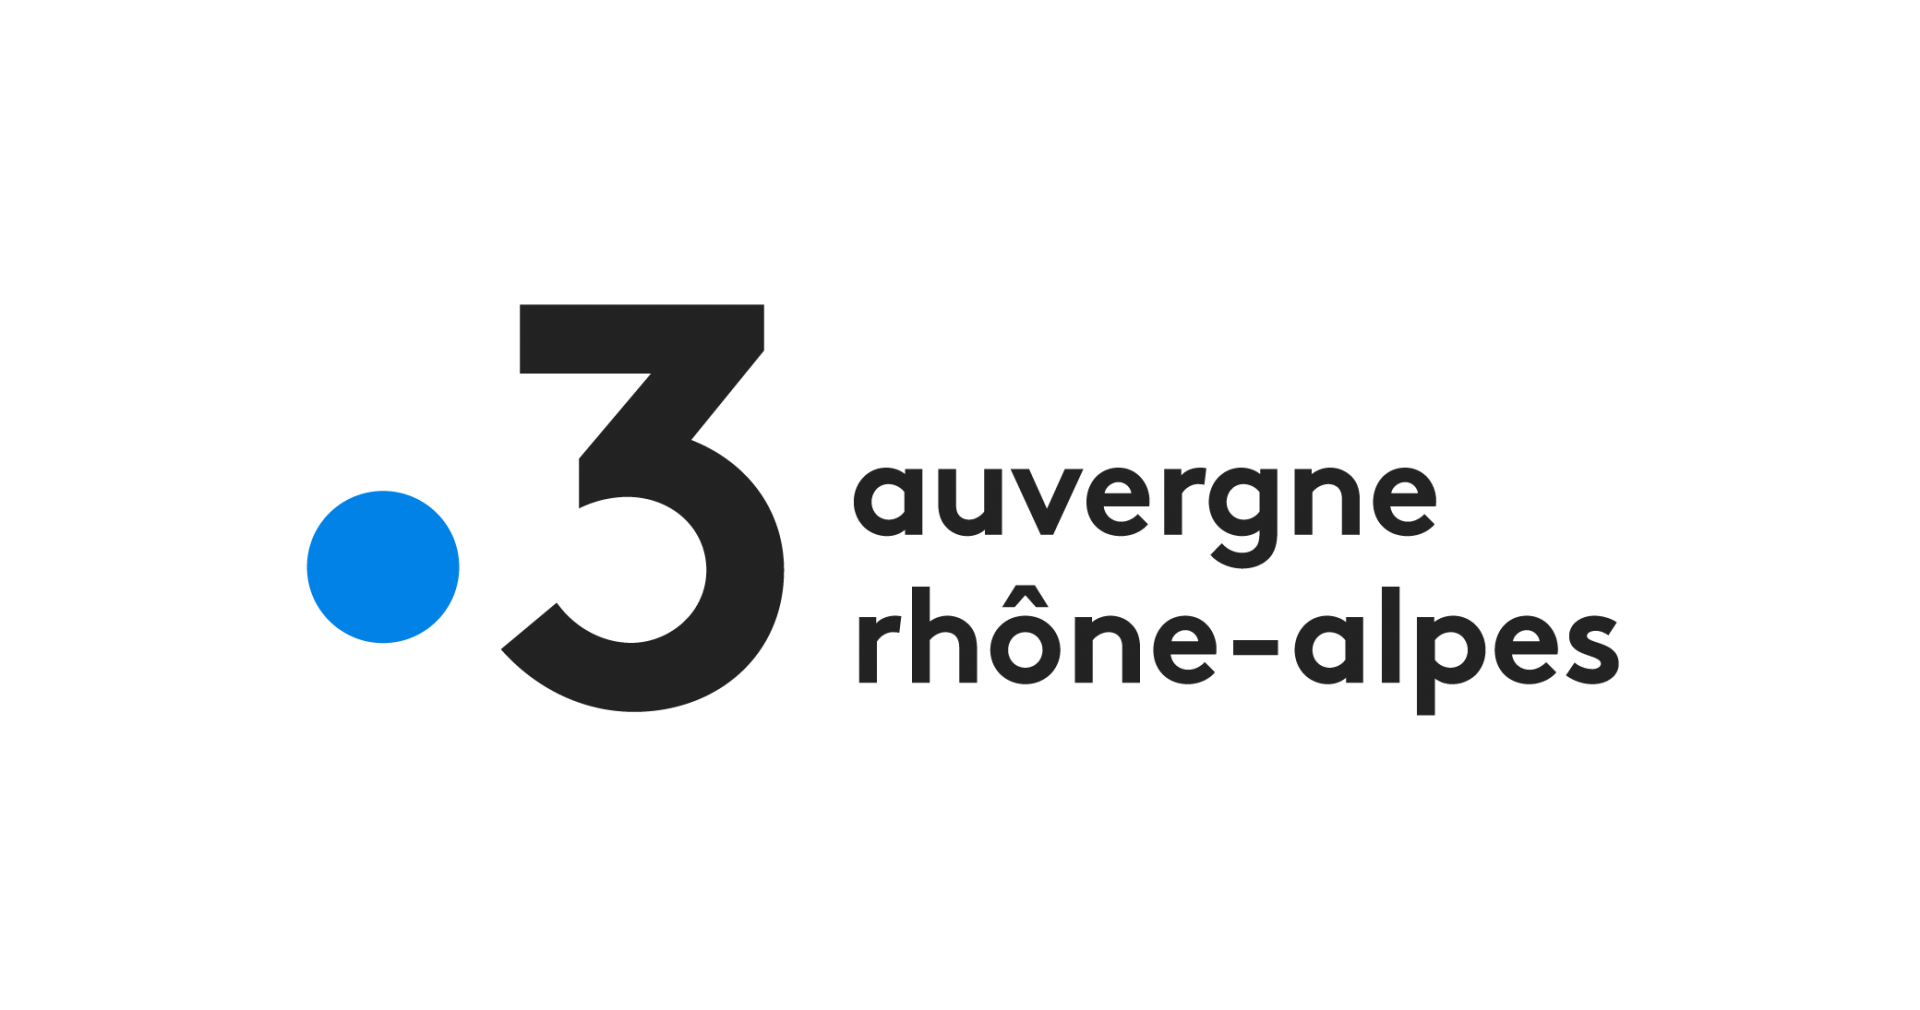 France 3 logo rvb auvergne rhone alpes couleur noir